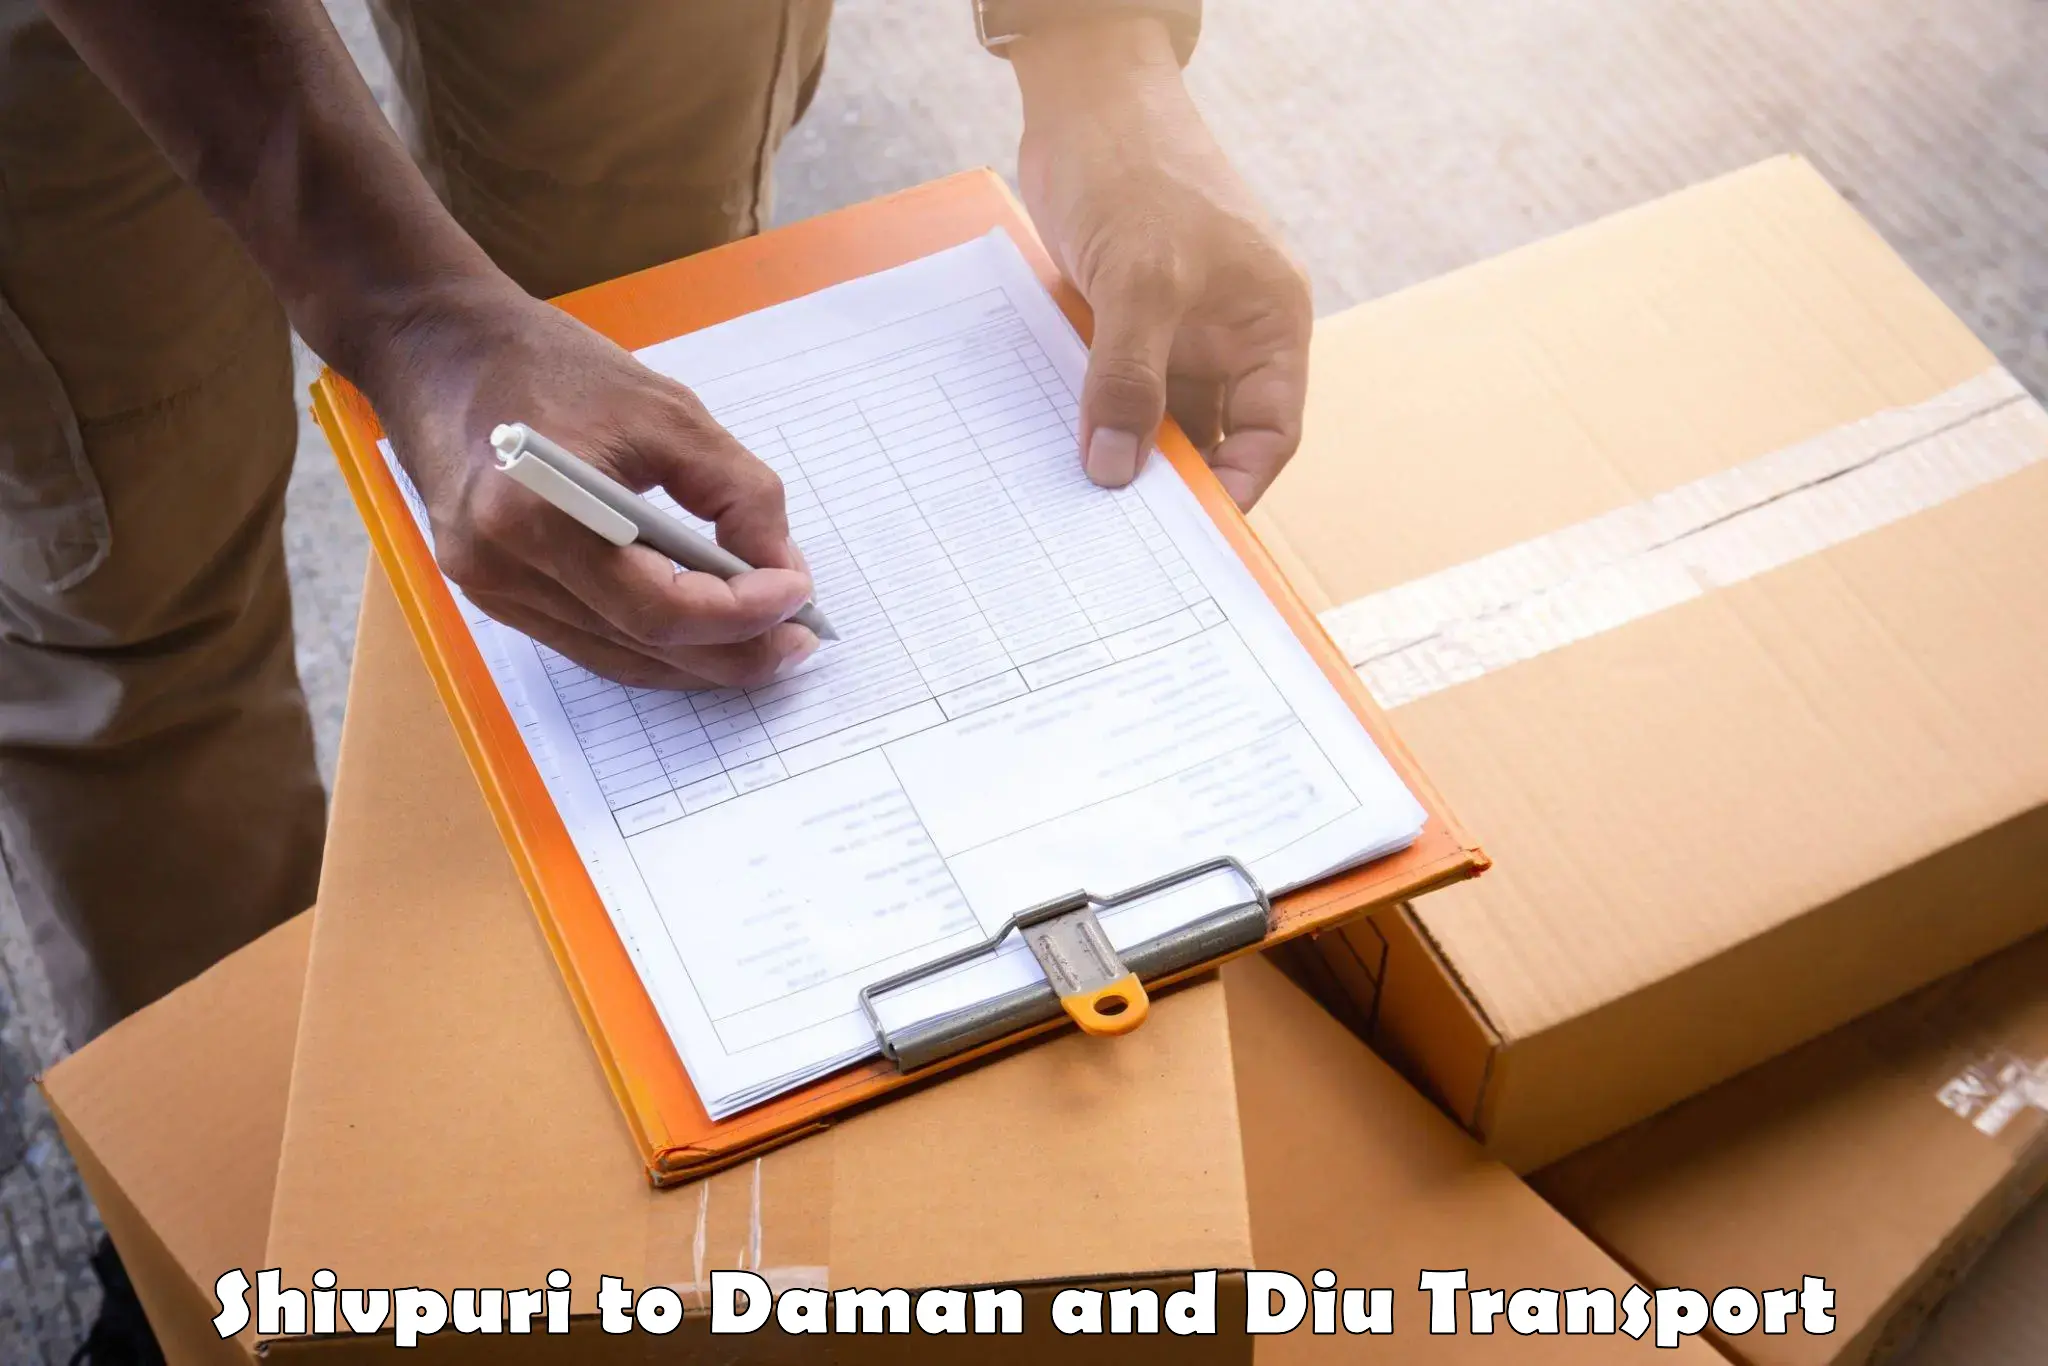 Furniture transport service Shivpuri to Daman and Diu